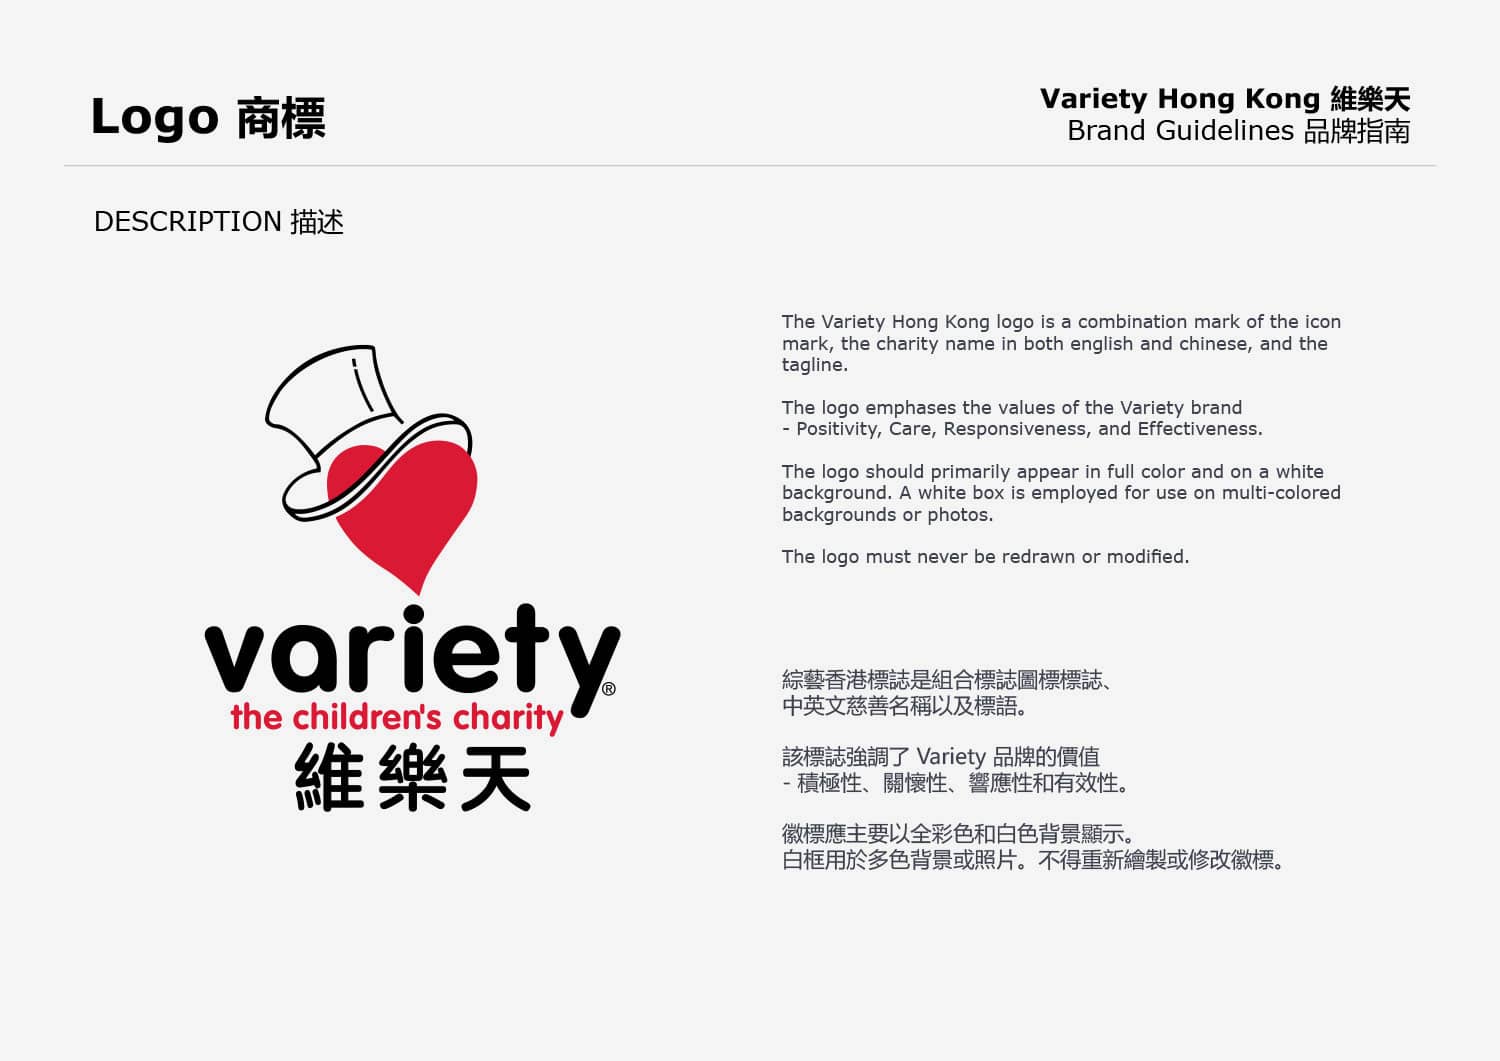 Variety-HK-guidelines-2021-13